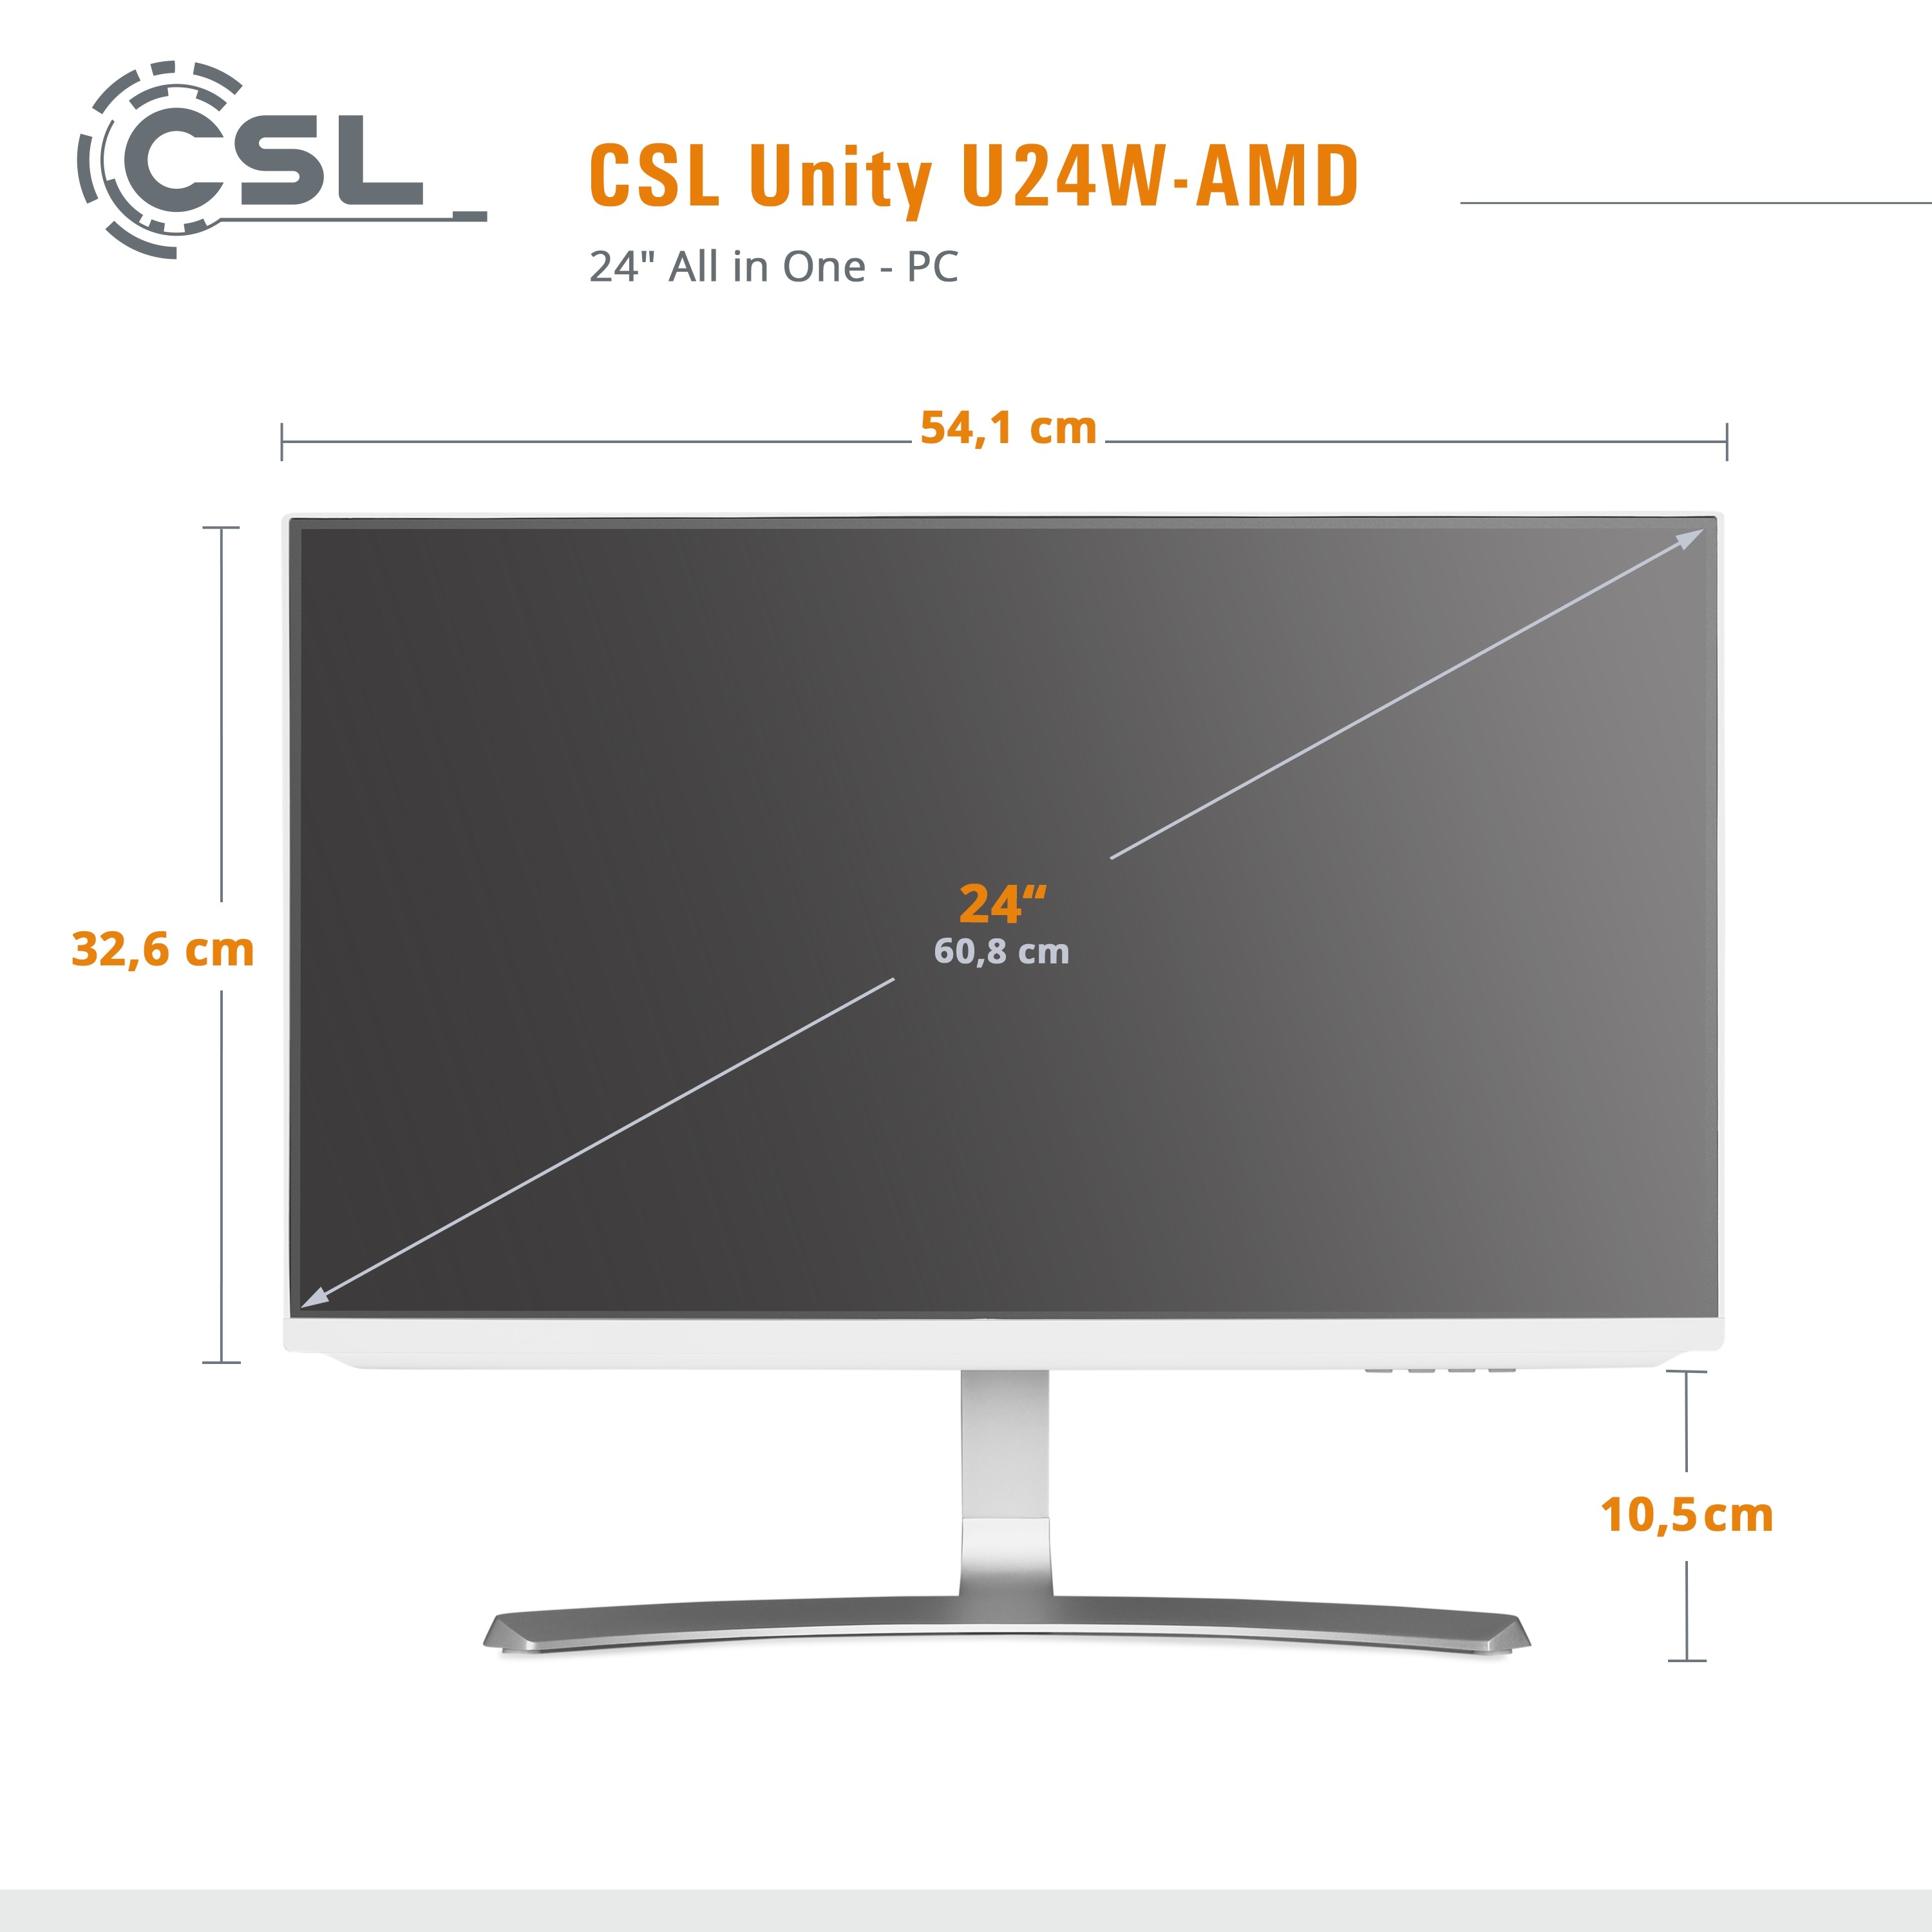 Computer 4650G 16 / Unity RAM All-in-One-PC GB U24W-AMD / CSL | / 1000 CSL GB